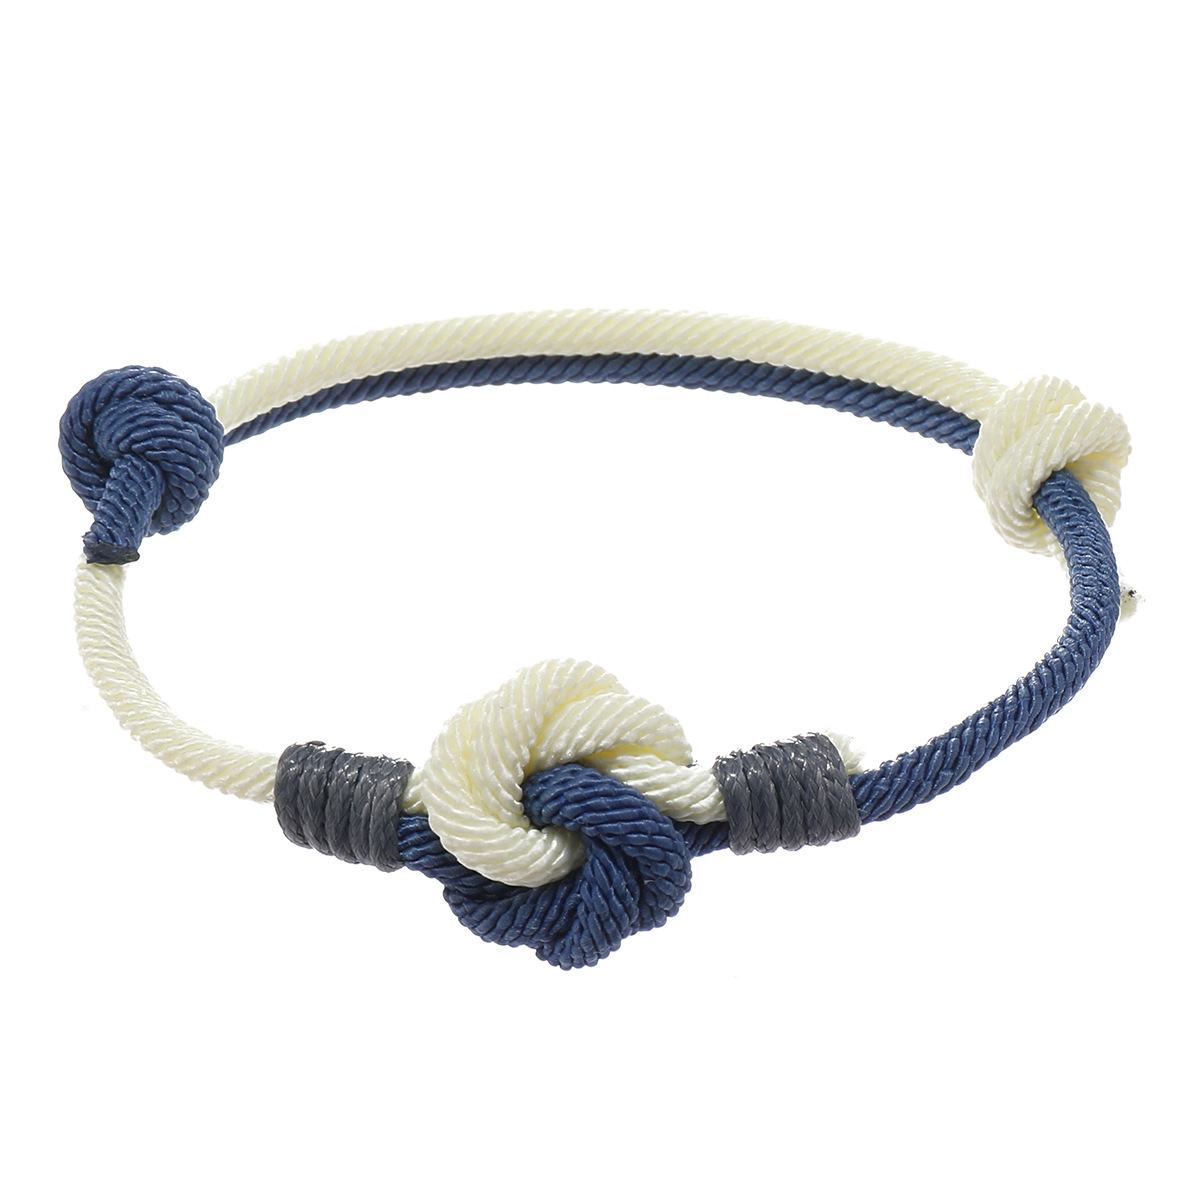 2:Blue   beige (Mandala knot)